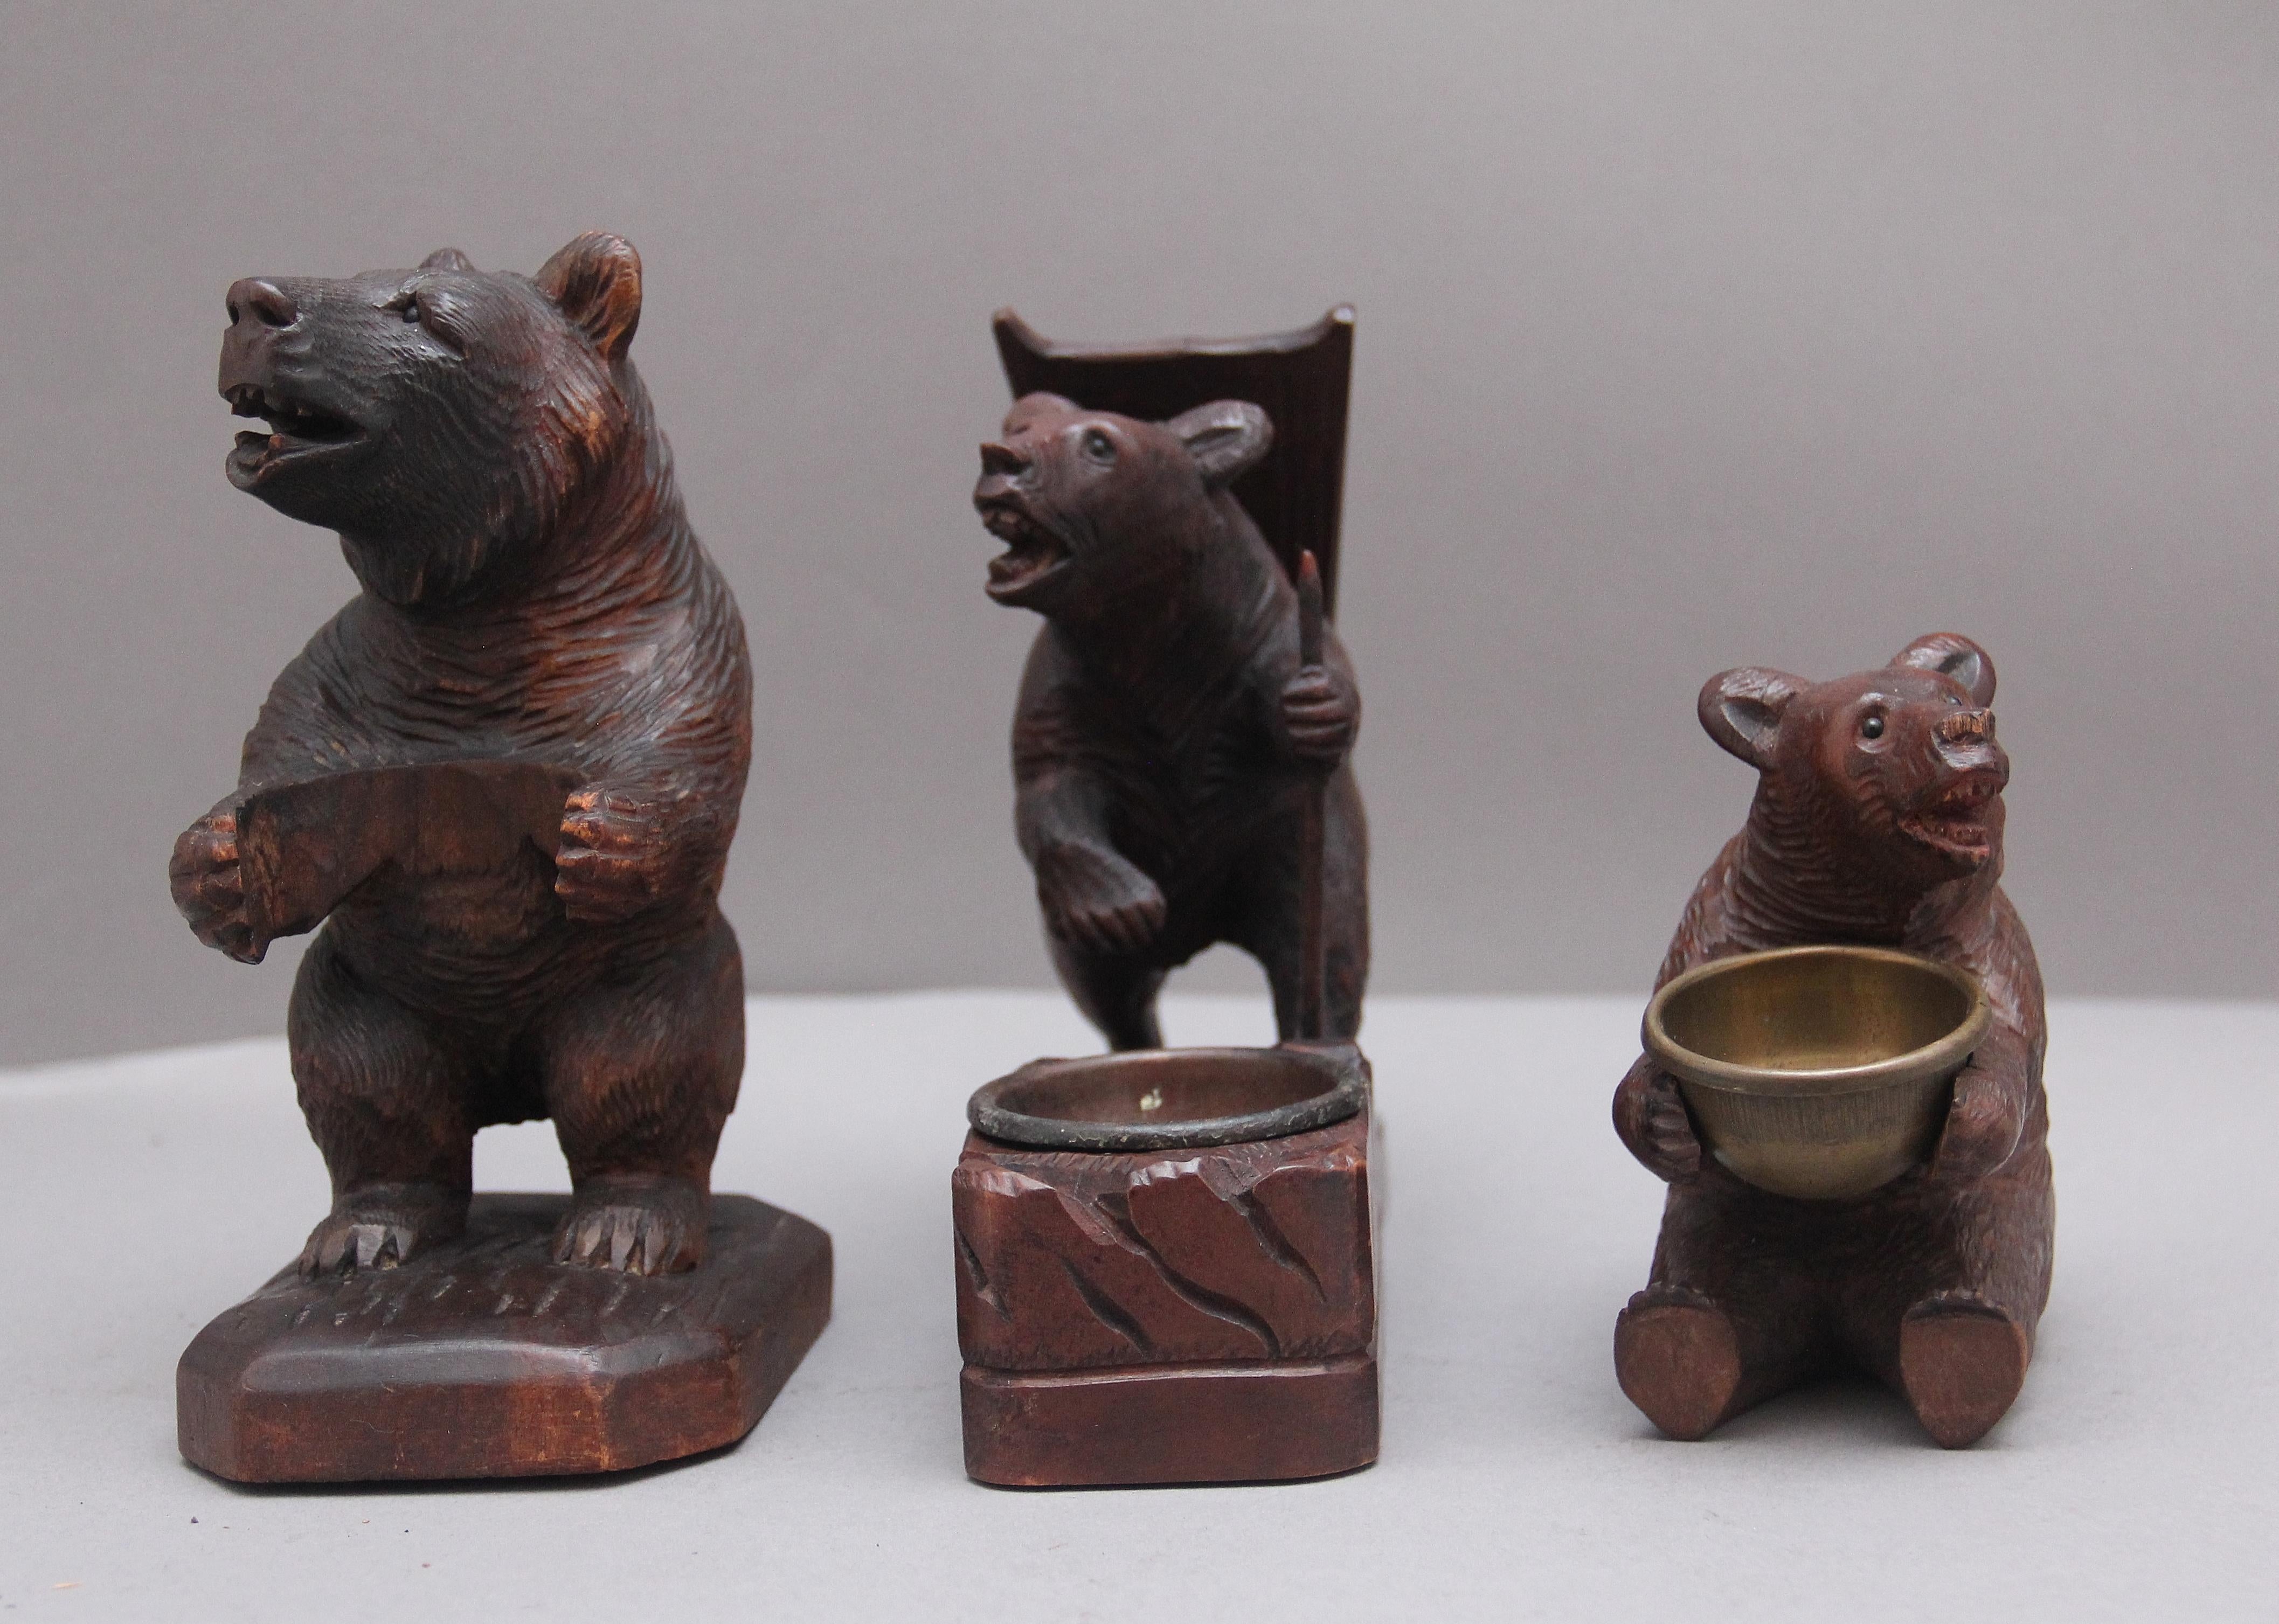 Ein Satz von drei schwarzen Waldschnitzereien des 19. Jahrhunderts von Bären in verschiedenen Posen, alle drei Bären sind in sehr gutem Zustand und mit schönen knackigen Schnitzereien.
 